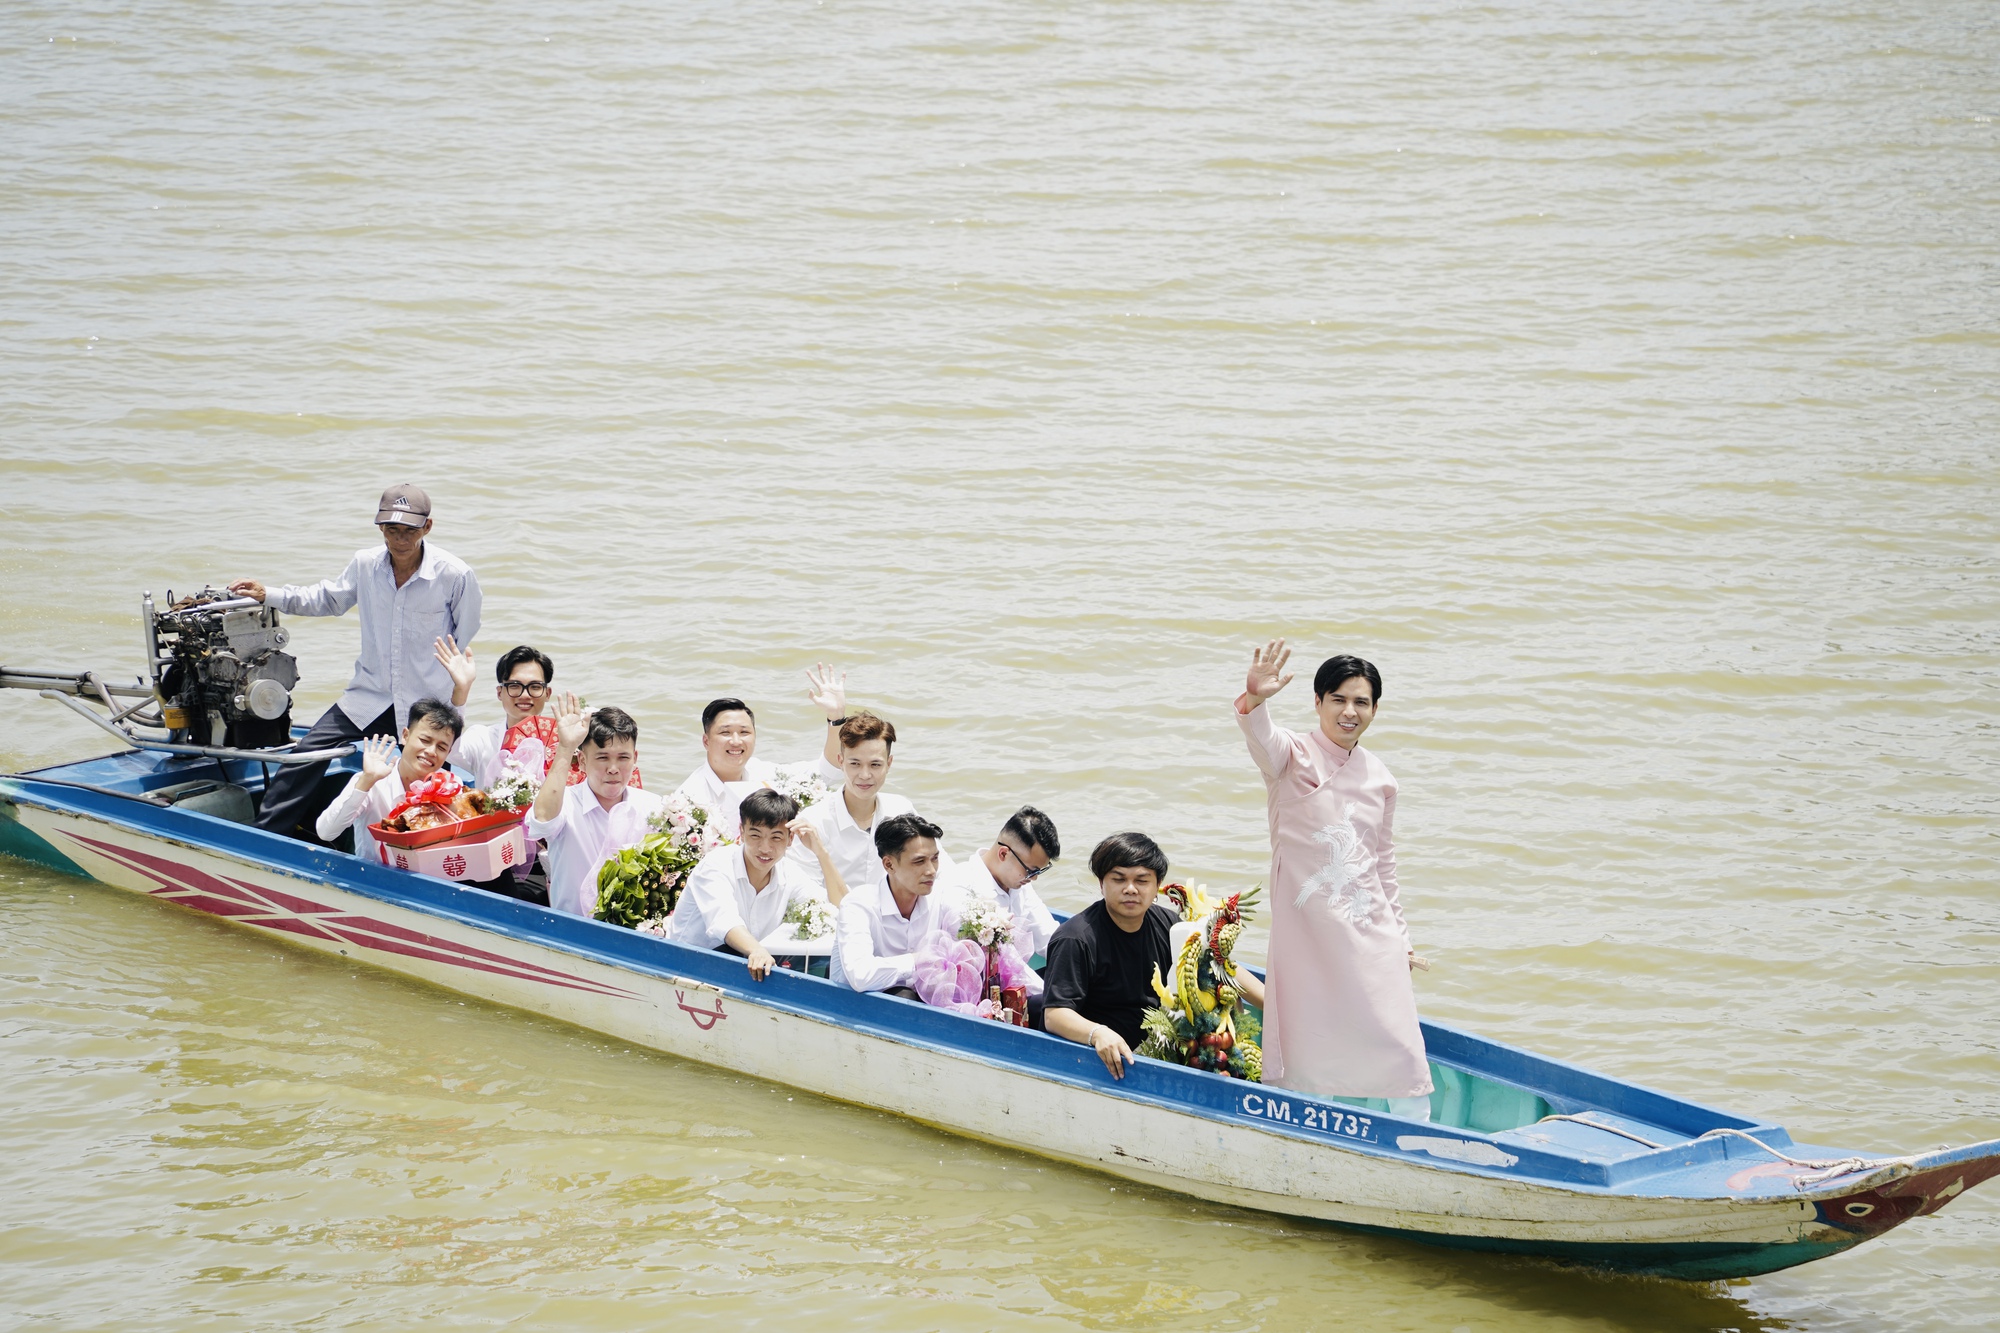 Hồ Quang Hiếu tổ chức đám hỏi, nhan sắc cô dâu gây chú ý - Ảnh 6.